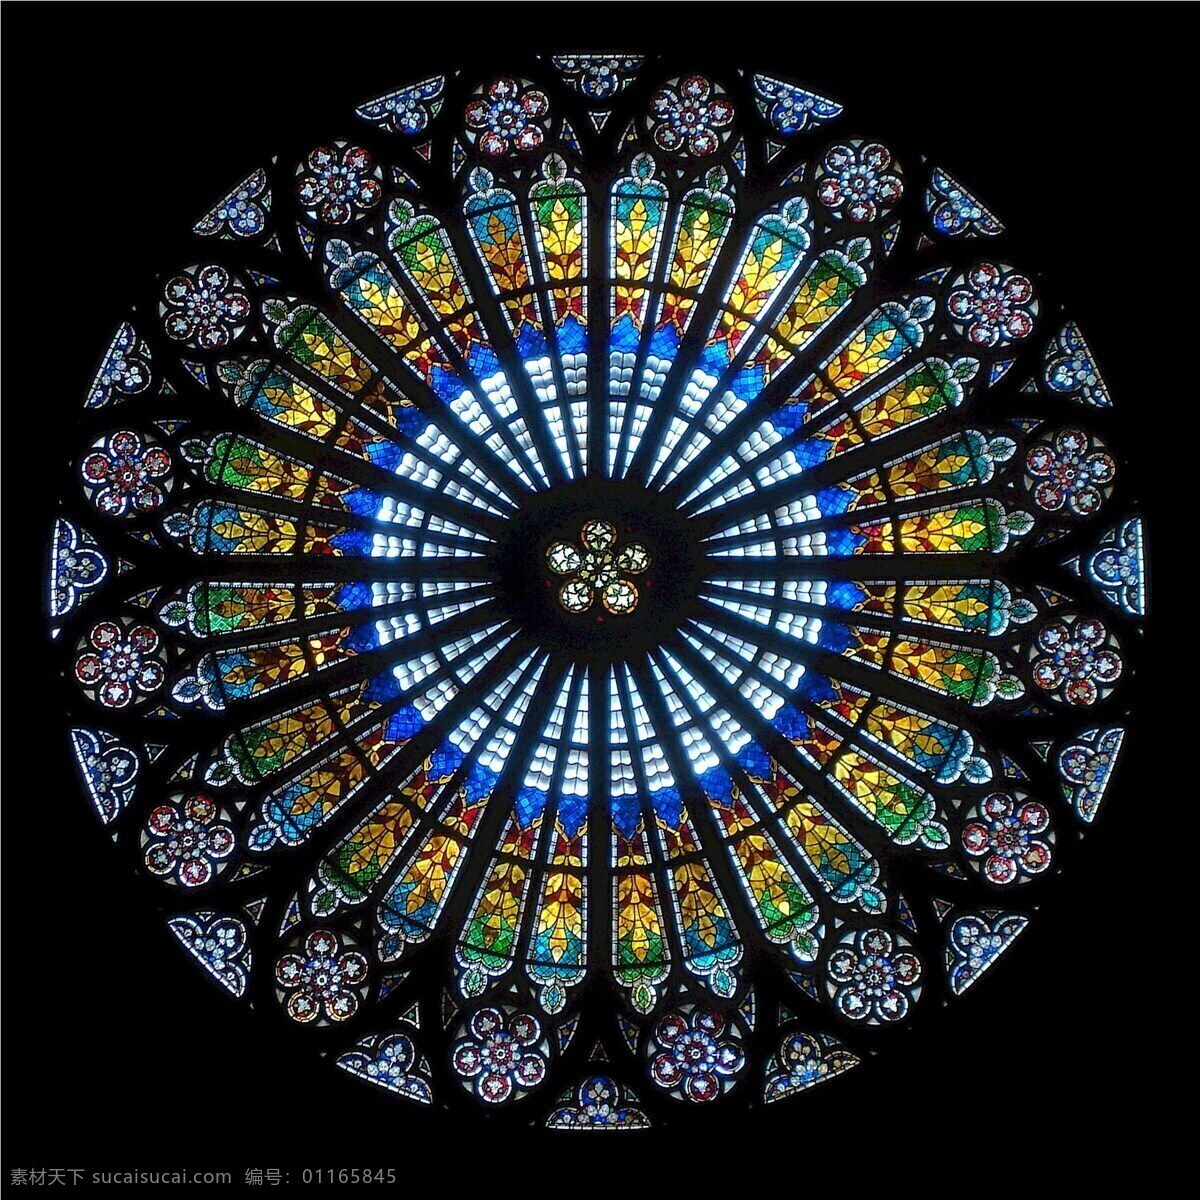 玫瑰窗 斯特拉斯堡 大 教堂 法国 结构 哥特 大教堂